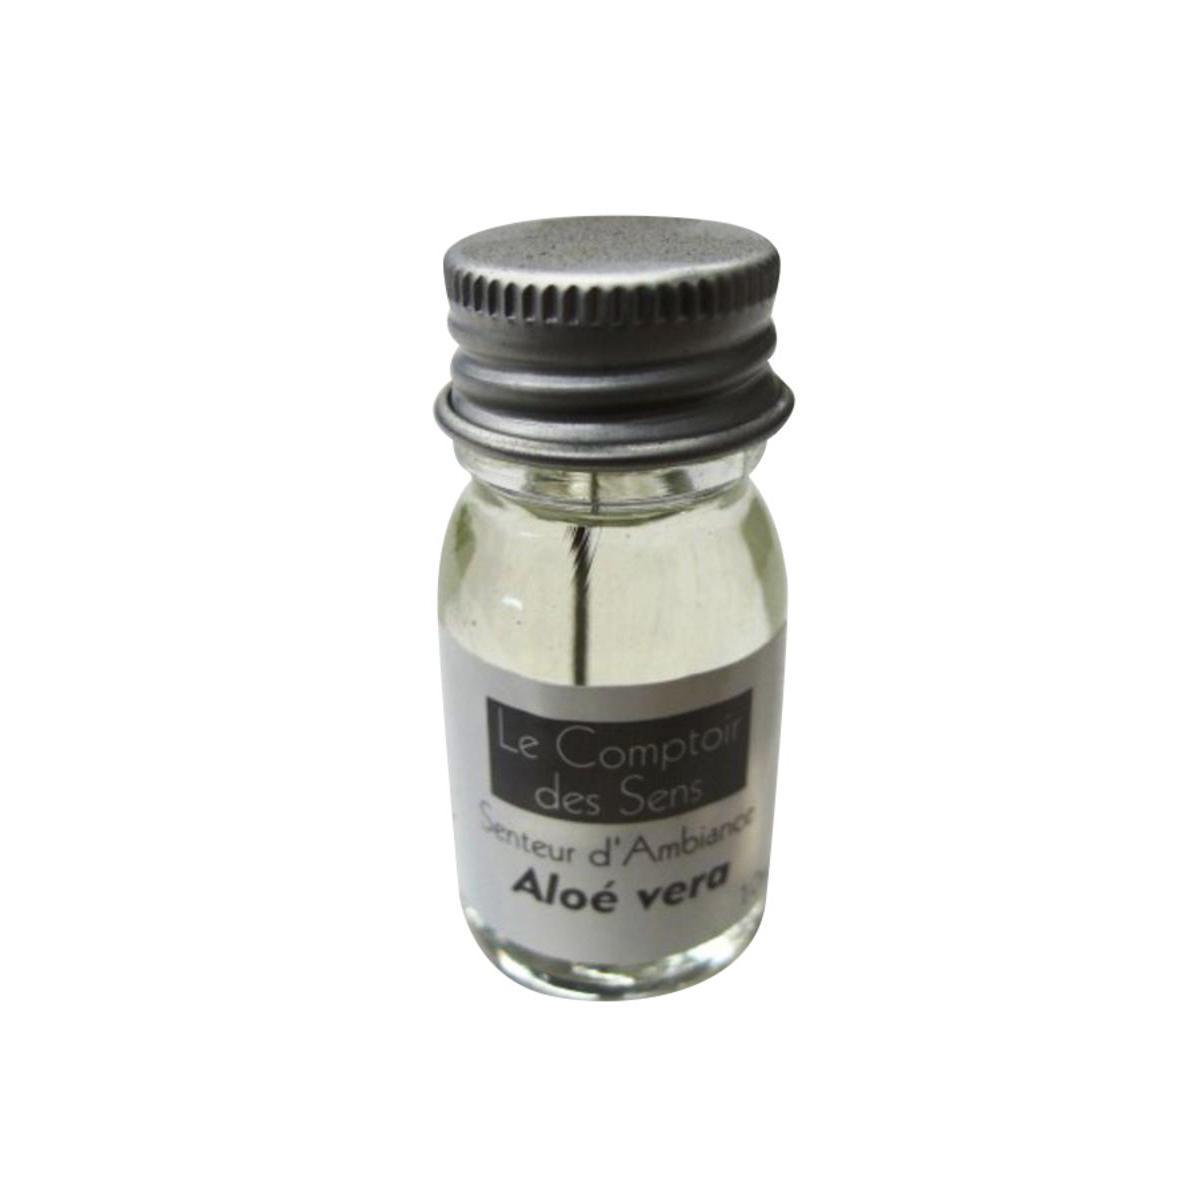 Extrait senteur aloe vera - Verre - D 2,5 x 5 cm - 10 ml - Blanc